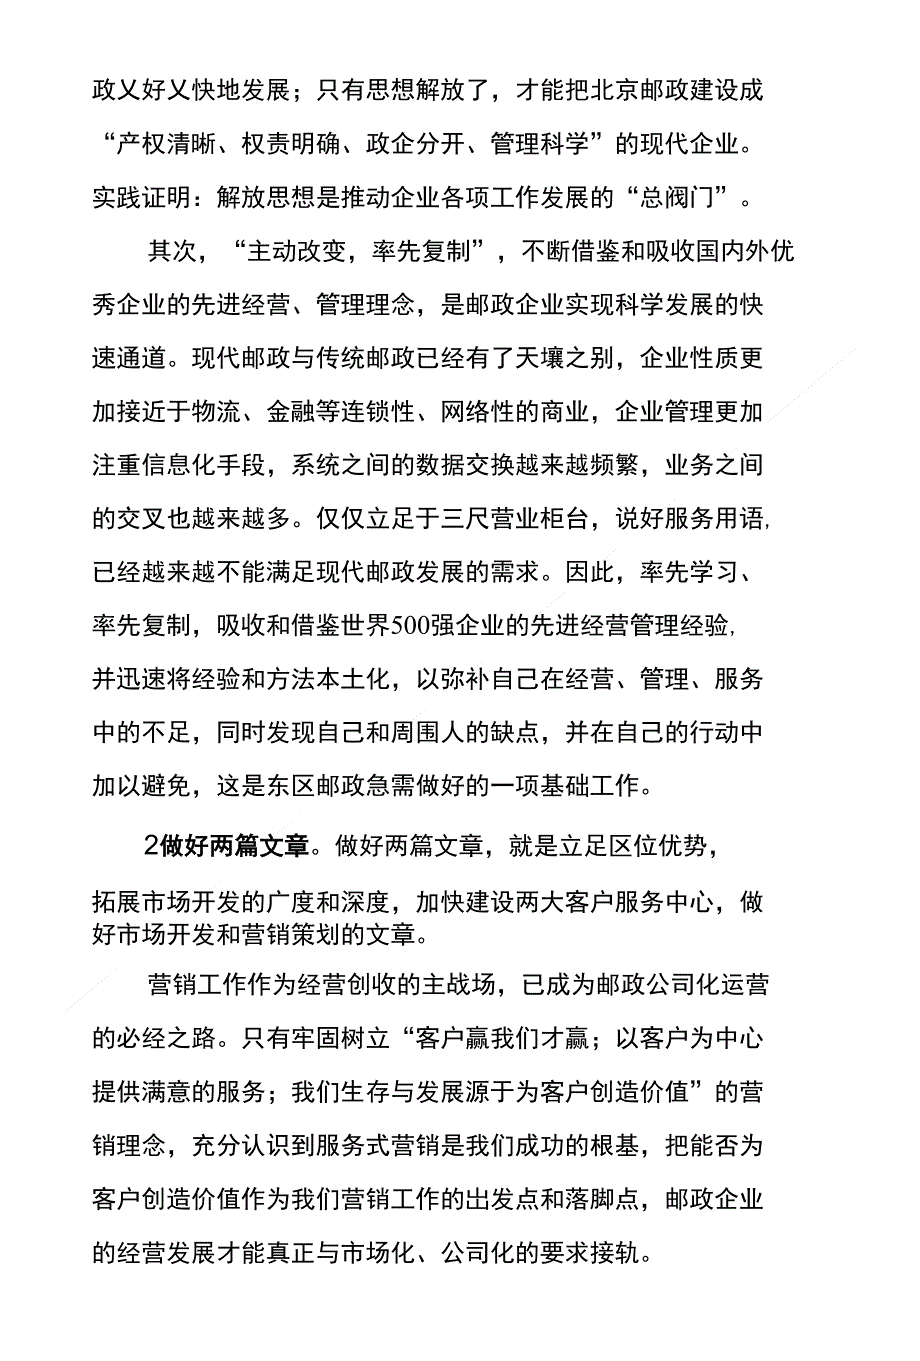 深入学习实践科学发展观 - 北京邮政党建网_第3页